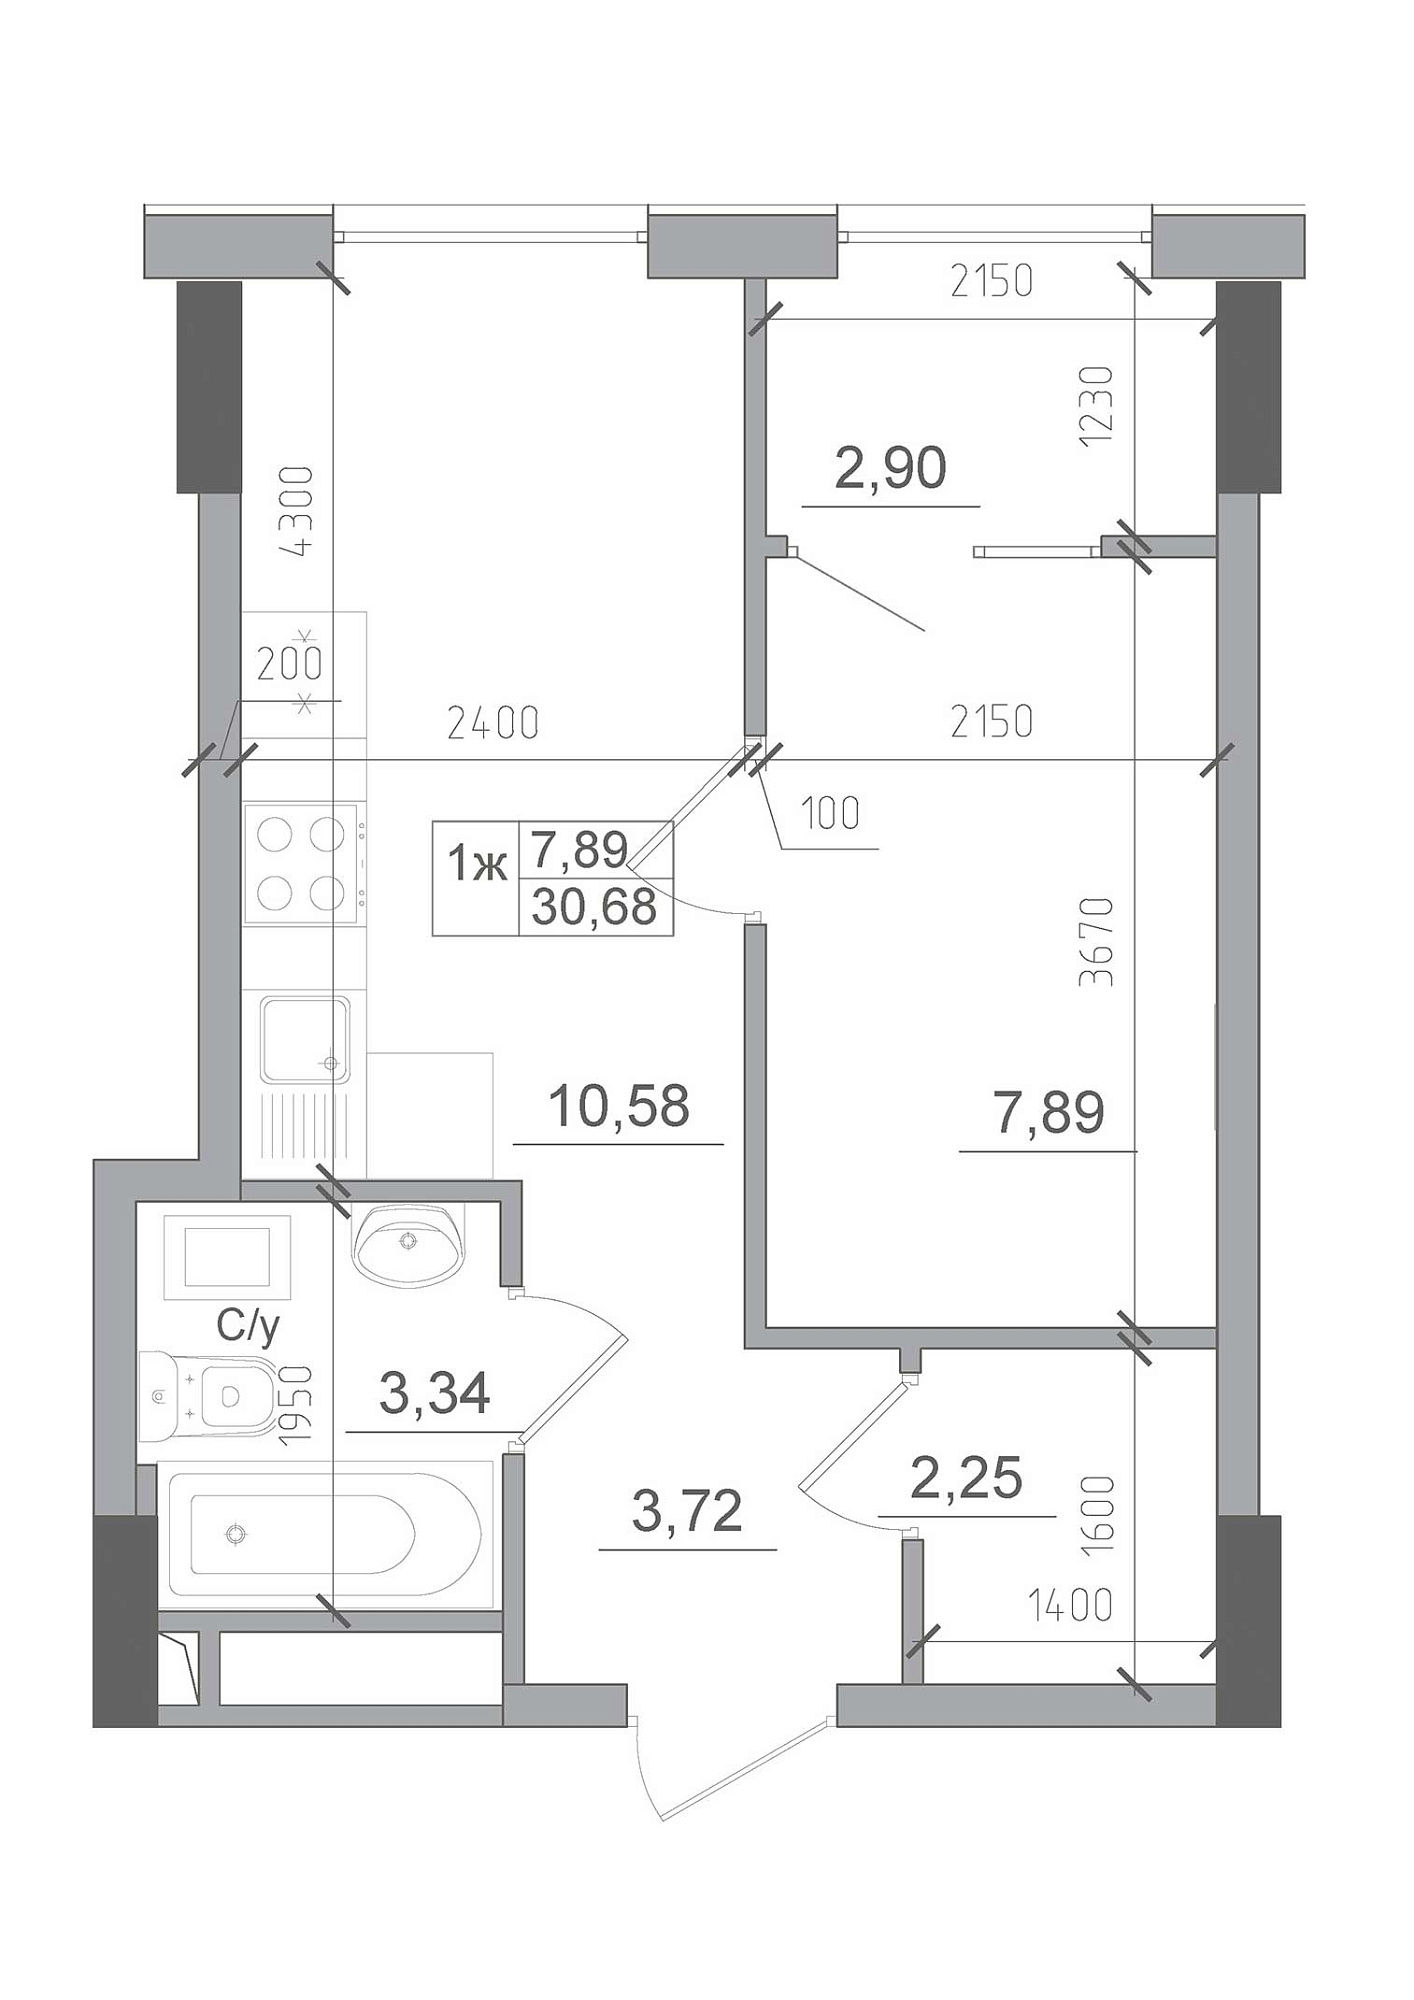 Планировка 1-к квартира площей 30.68м2, AB-22-01/00012.